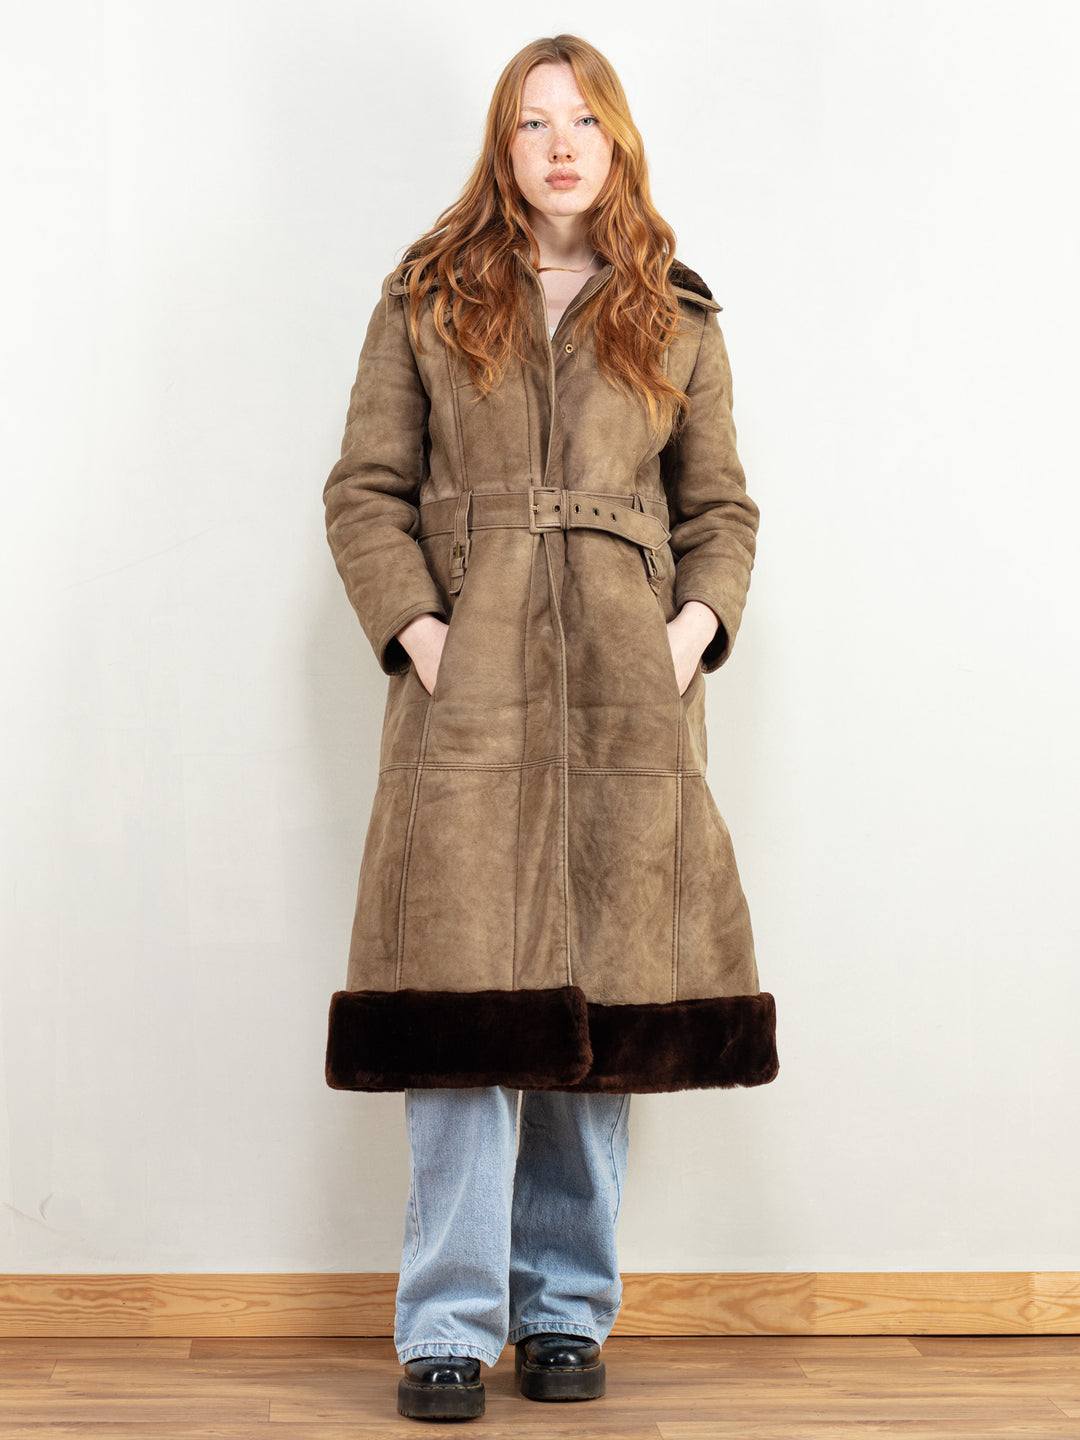 Penny Lane Coat vintage 70's women shearling sheepskin button up coat boho hippie overcoat y2k style lambskin leather women size medium M